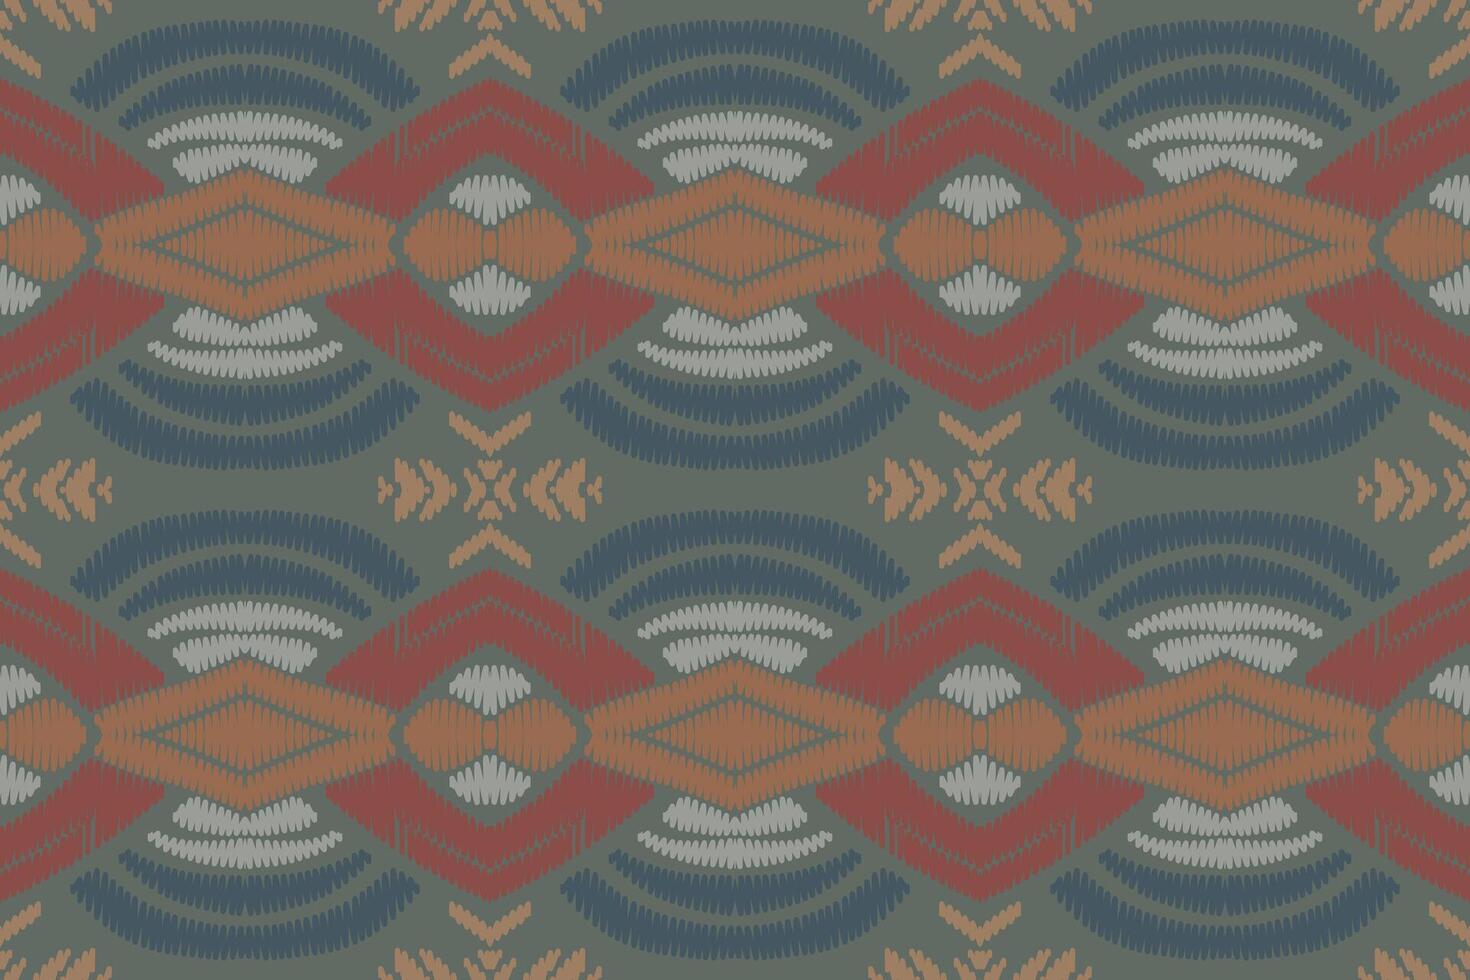 etniska ikat sömlösa mönster i tribal. design för bakgrund, tapeter, vektorillustration, tyg, kläder, matta, textil, batik, broderi. vektor